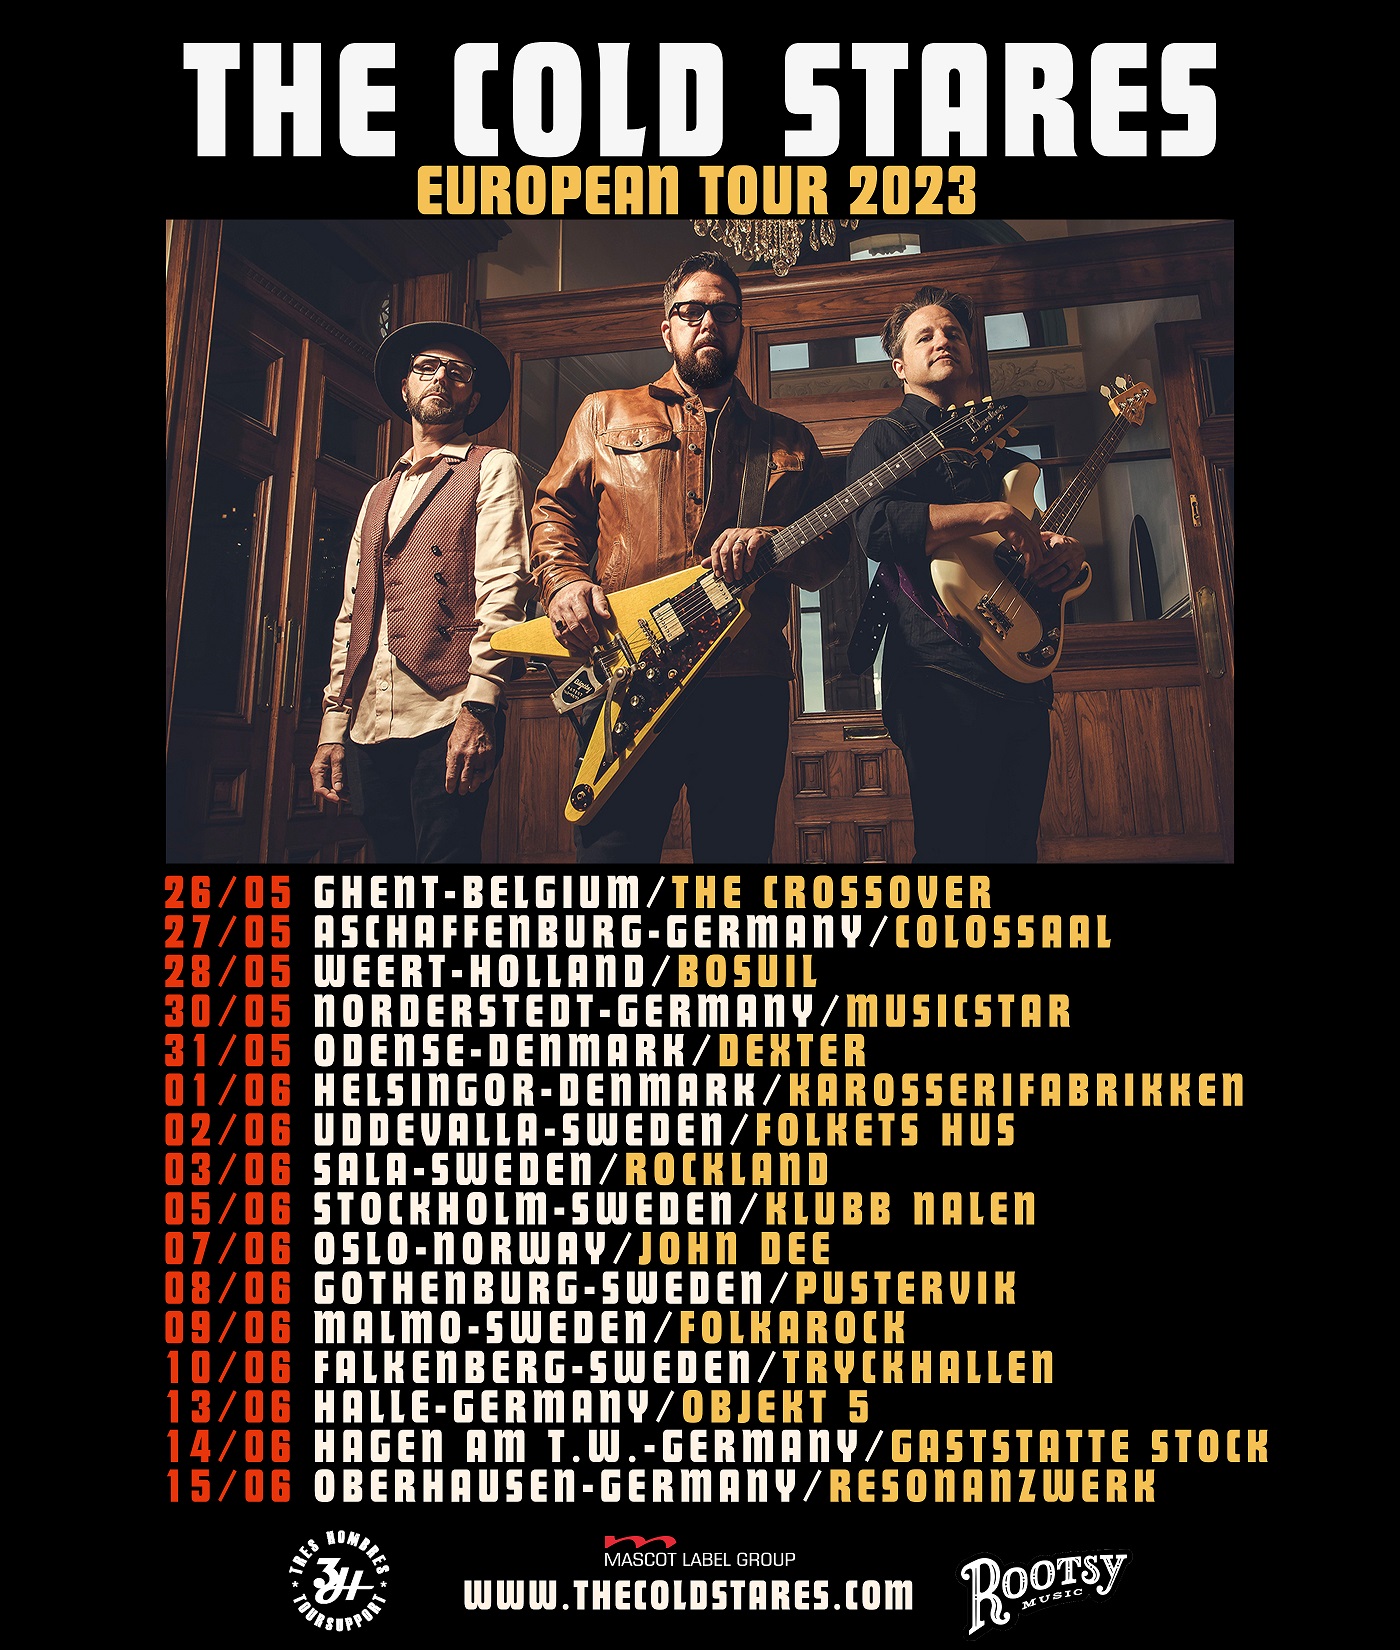 The Cold Stares 2023 European Tour Dates